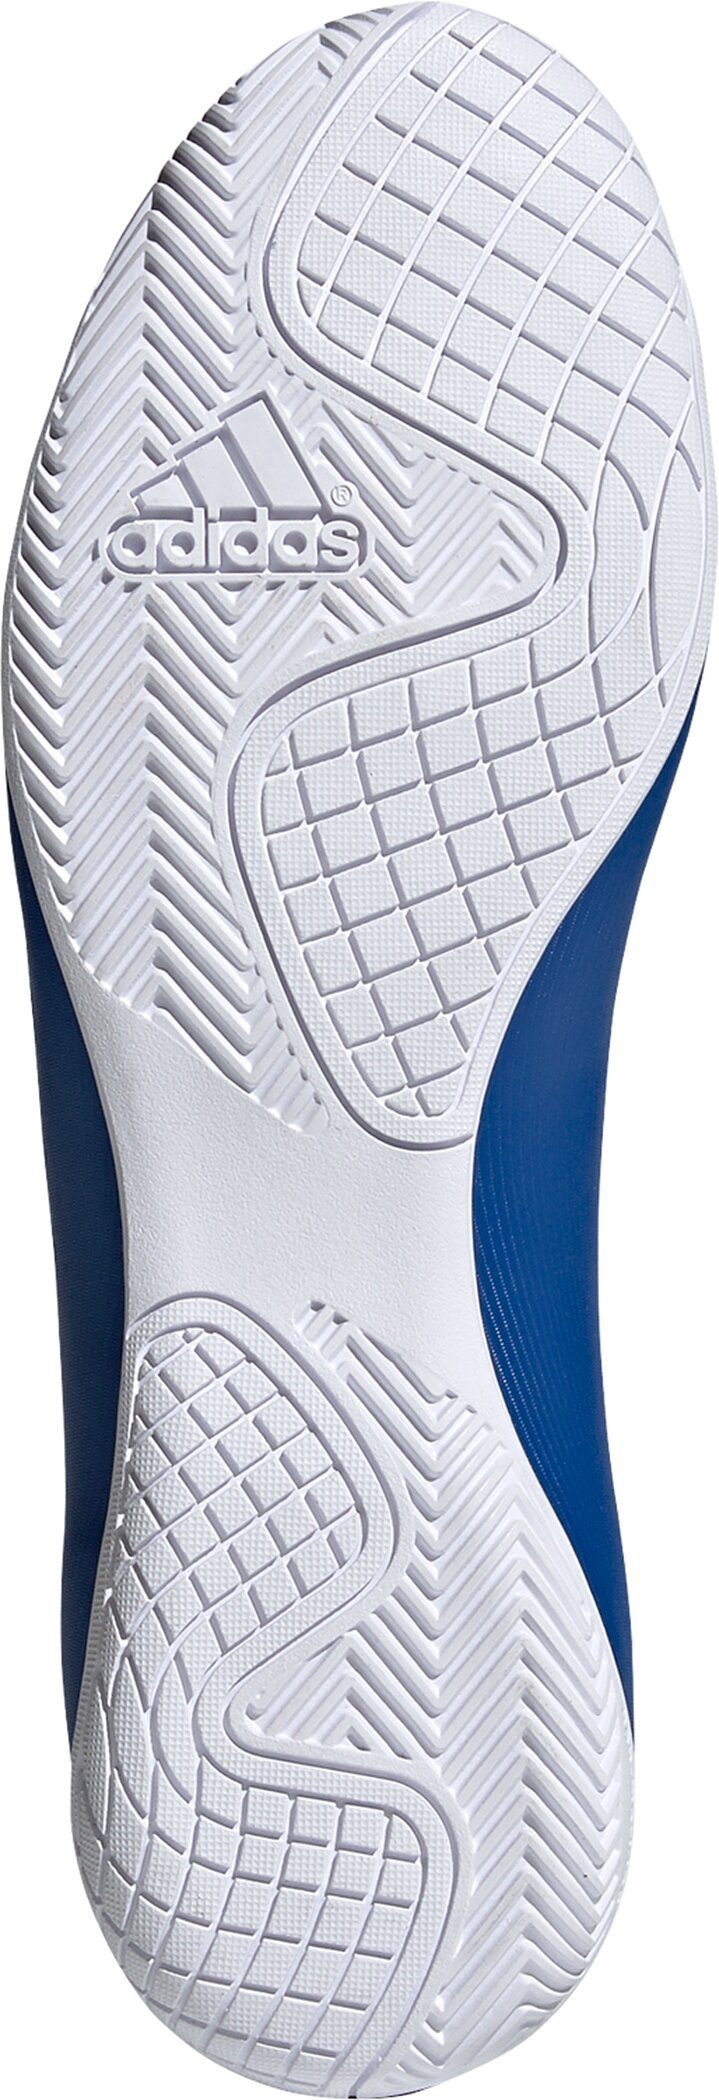 Sportswear new X IN royal/white/blac Fußballschuh adidas 19.4